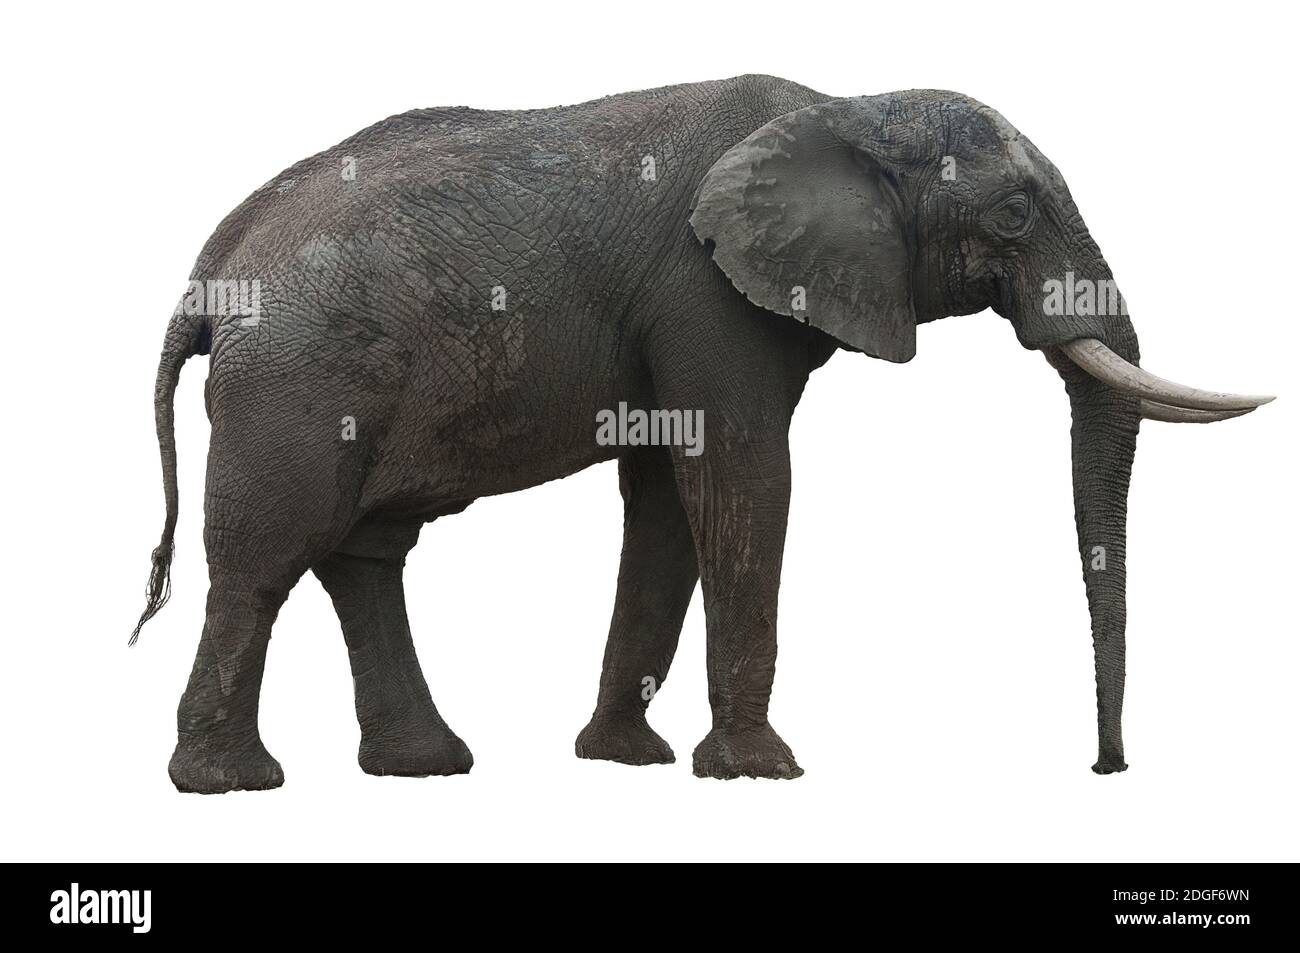 African Elephant mit seinen Stoßzähnen und großen Ohren ausgeschnitten Auf  weißem Hintergrund Stockfotografie - Alamy